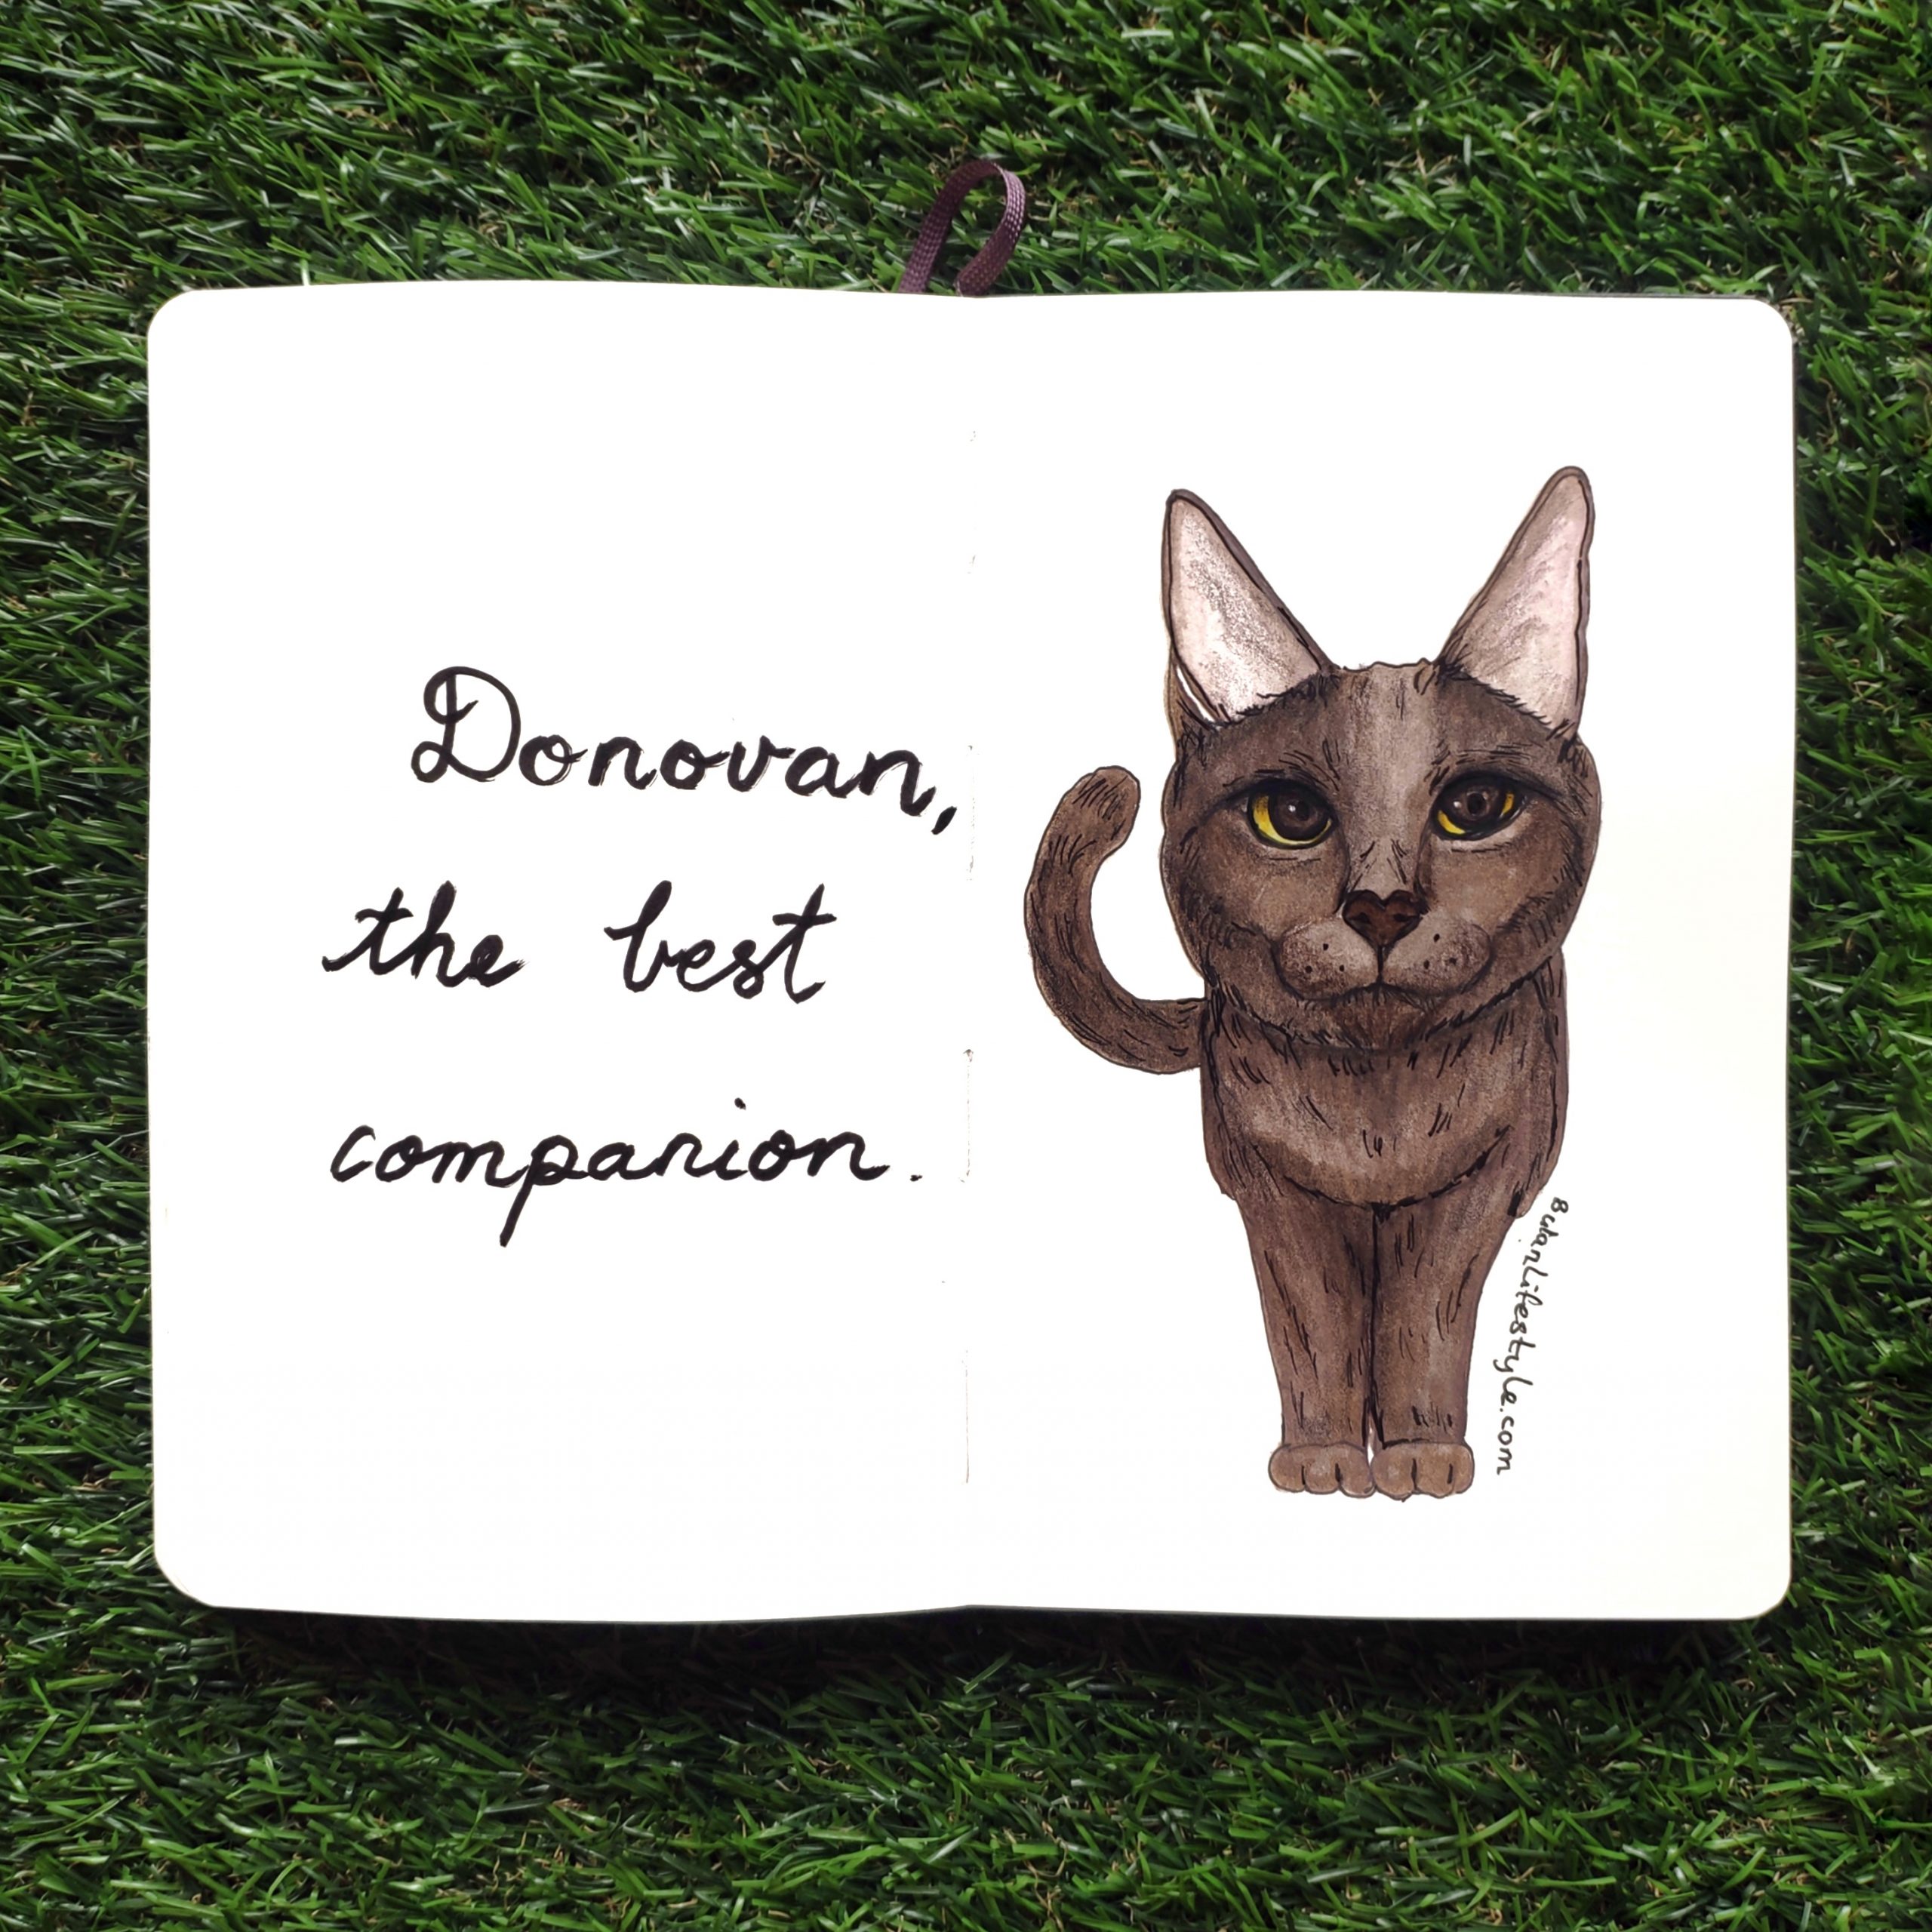 Cat portrait : Donovan